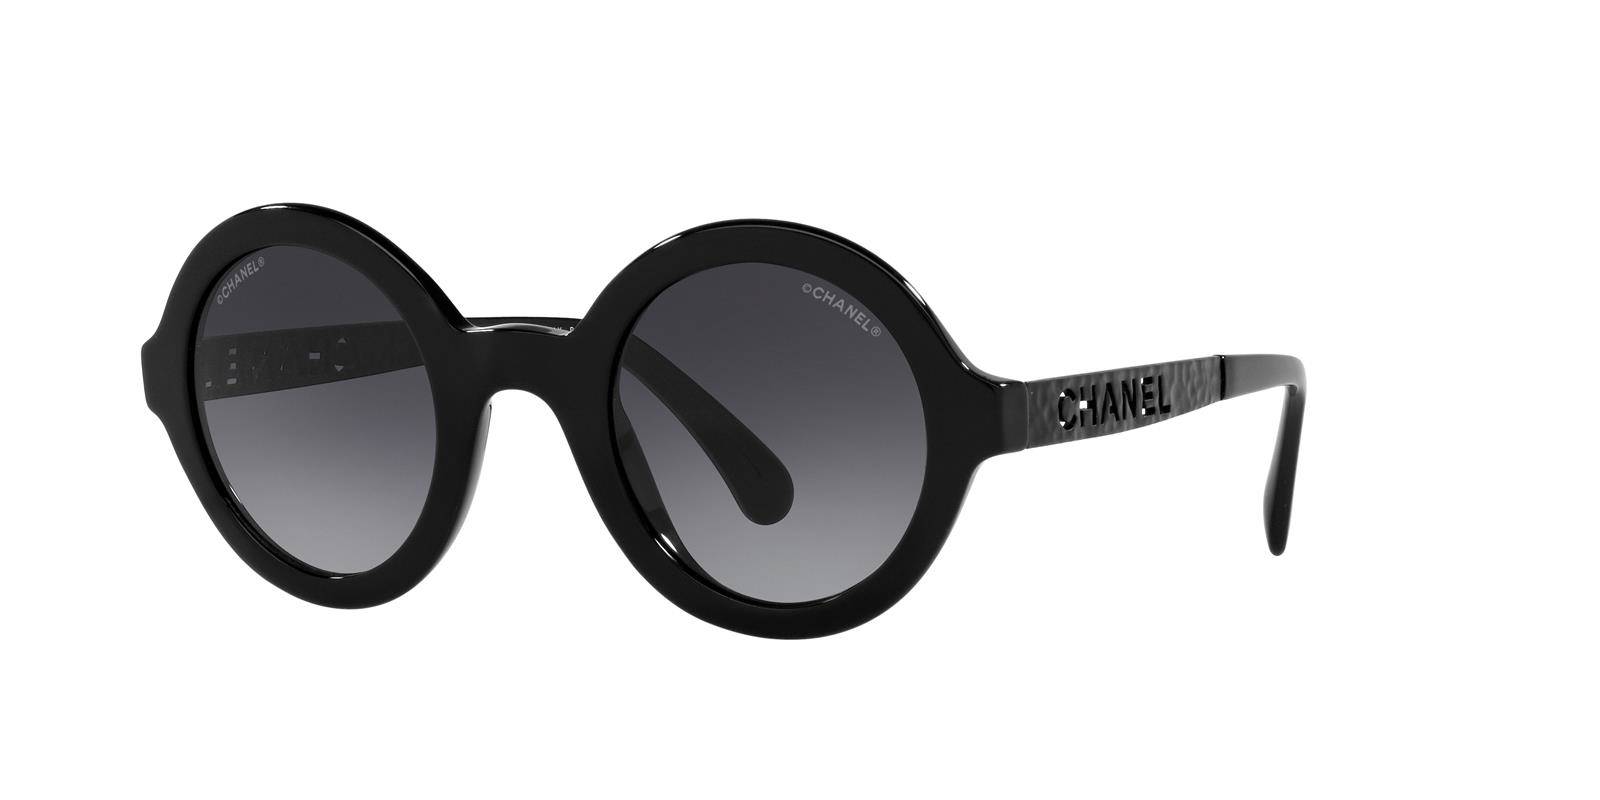 Chanel Sunglasses CH5441-C888S6, Sunglasses